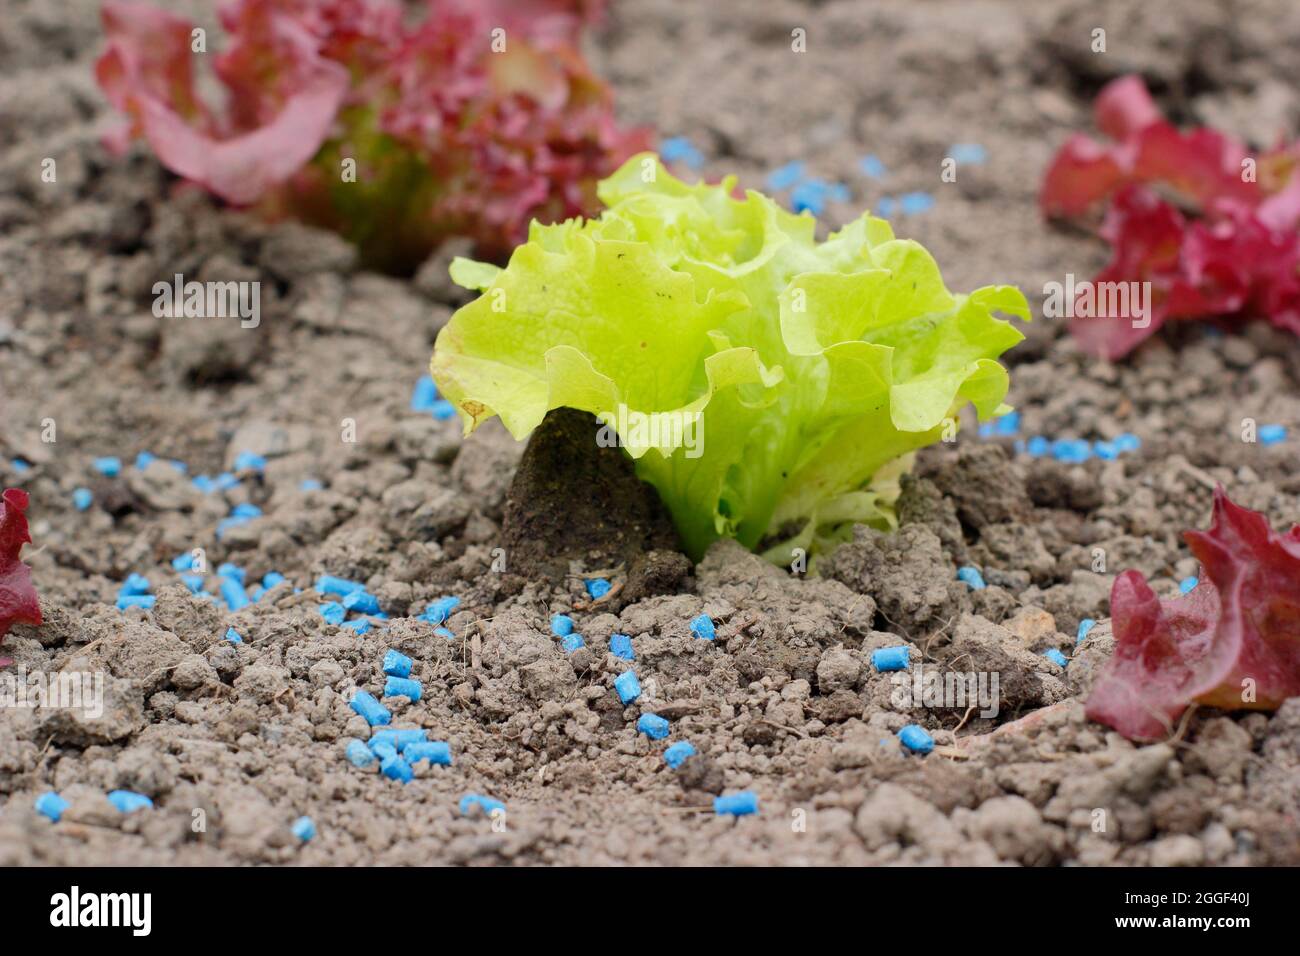 Pastilles de limaces. Granules de limaces de phosphate ferrique à côté de jeunes plants de laitue pour aider à empêcher les limaces et les escargots d'attaquer les cultures. ROYAUME-UNI Banque D'Images